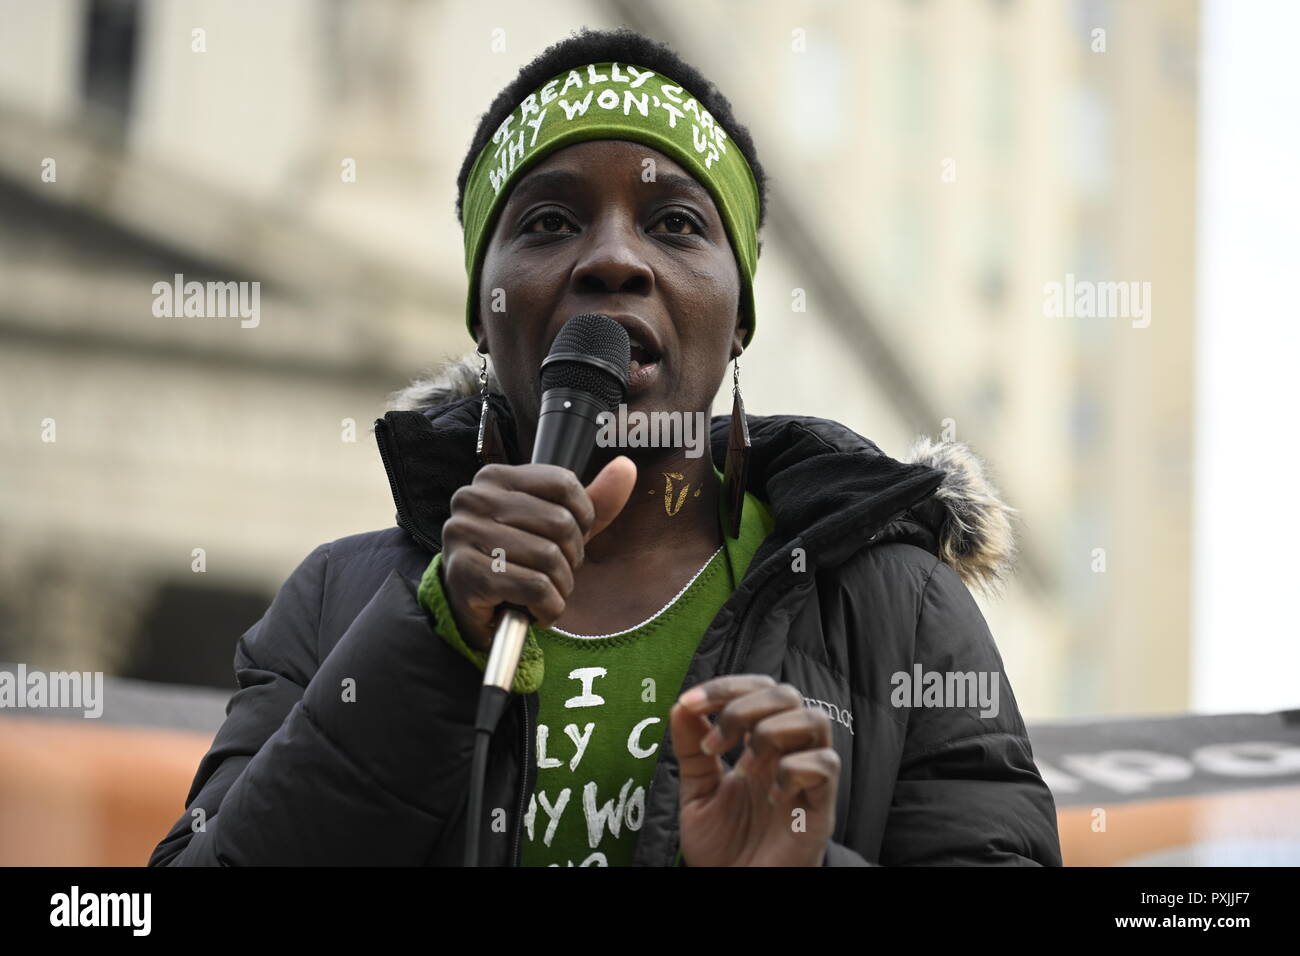 Nueva York, EEUU, 22 Oct, 2018. Patricia Okoumou habla en un mitin contra la brutalidad policial en Foley Square, en el Bajo Manhattan. Fue una de las docenas de eventos similares programadas en ciudades de los Estados Unidos para conmemorar el 23º Día Nacional de Protesta para Parar la Brutalidad Policial, fundada en 1996 por la Coalición 22 de octubre. Okoumou, un nativo de Congo, se enfrenta a un juicio en Dec 17 el allanamiento de morada y otros cargos después de que ella se subió al pedestal de la Estatua de la Libertad, el 4 de julio de 2018, para protestar contra las políticas de inmigración de la administración Trump. Crédito: Joseph Reid/Alamy Live News Foto de stock